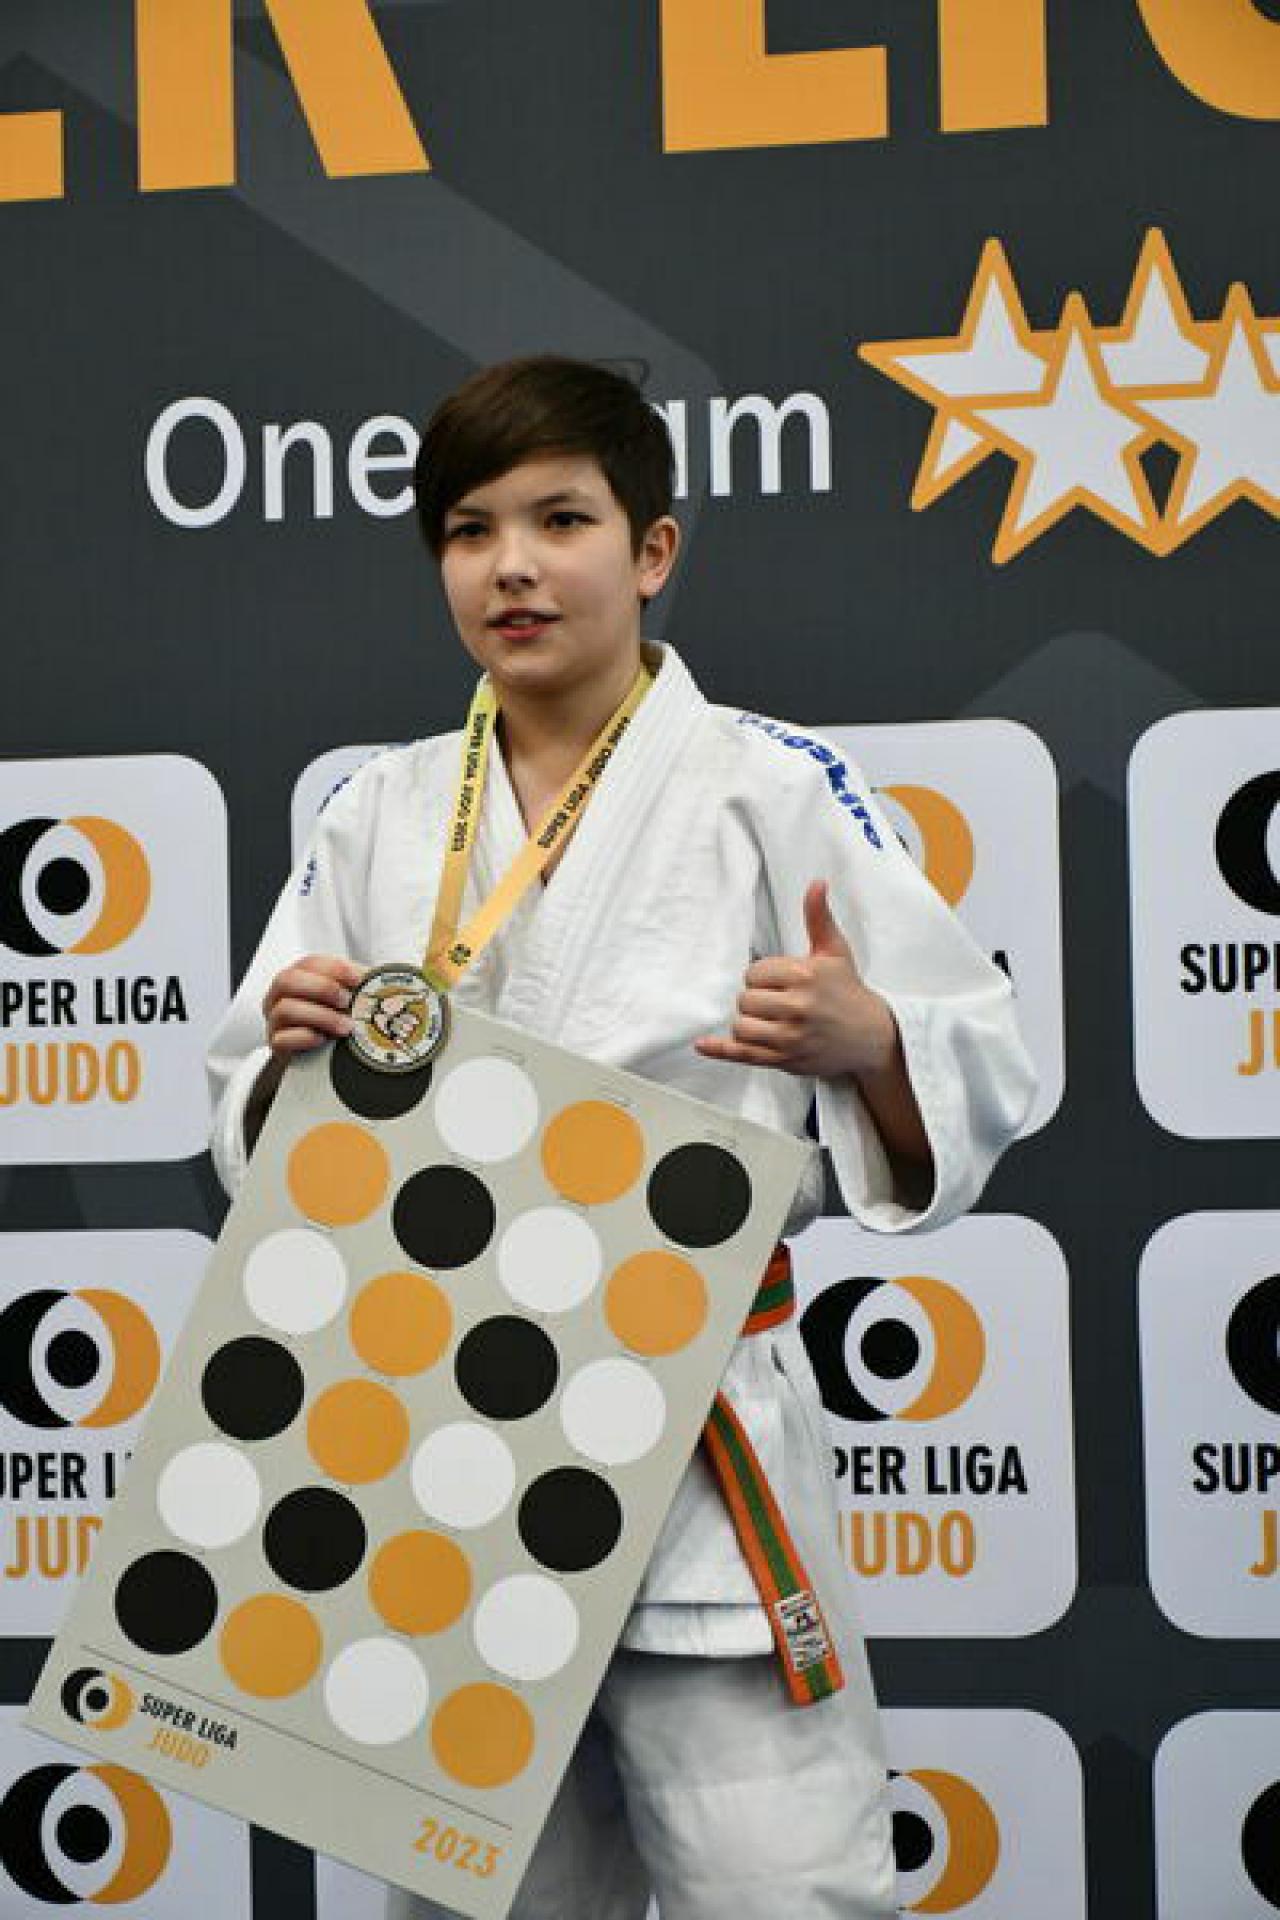 Super Liga Judo Świebodzice